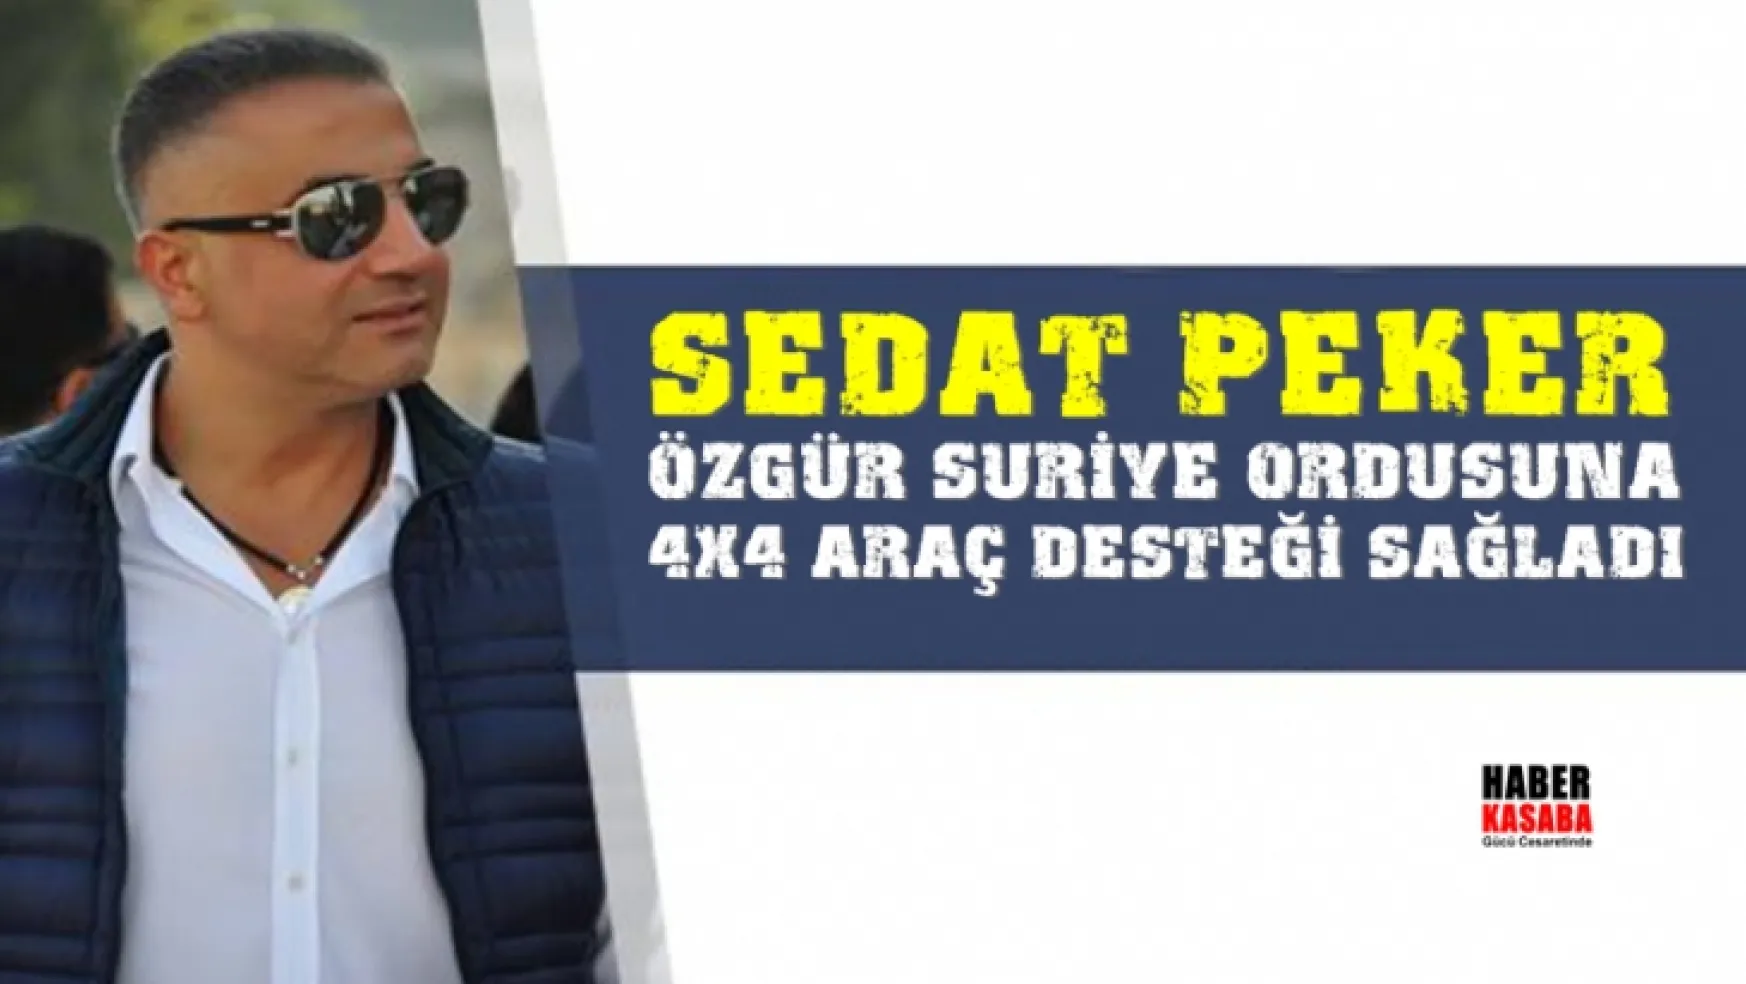 Sedat Peker Özgür Suriye Ordusu'na arazi aracı desteği sağladı